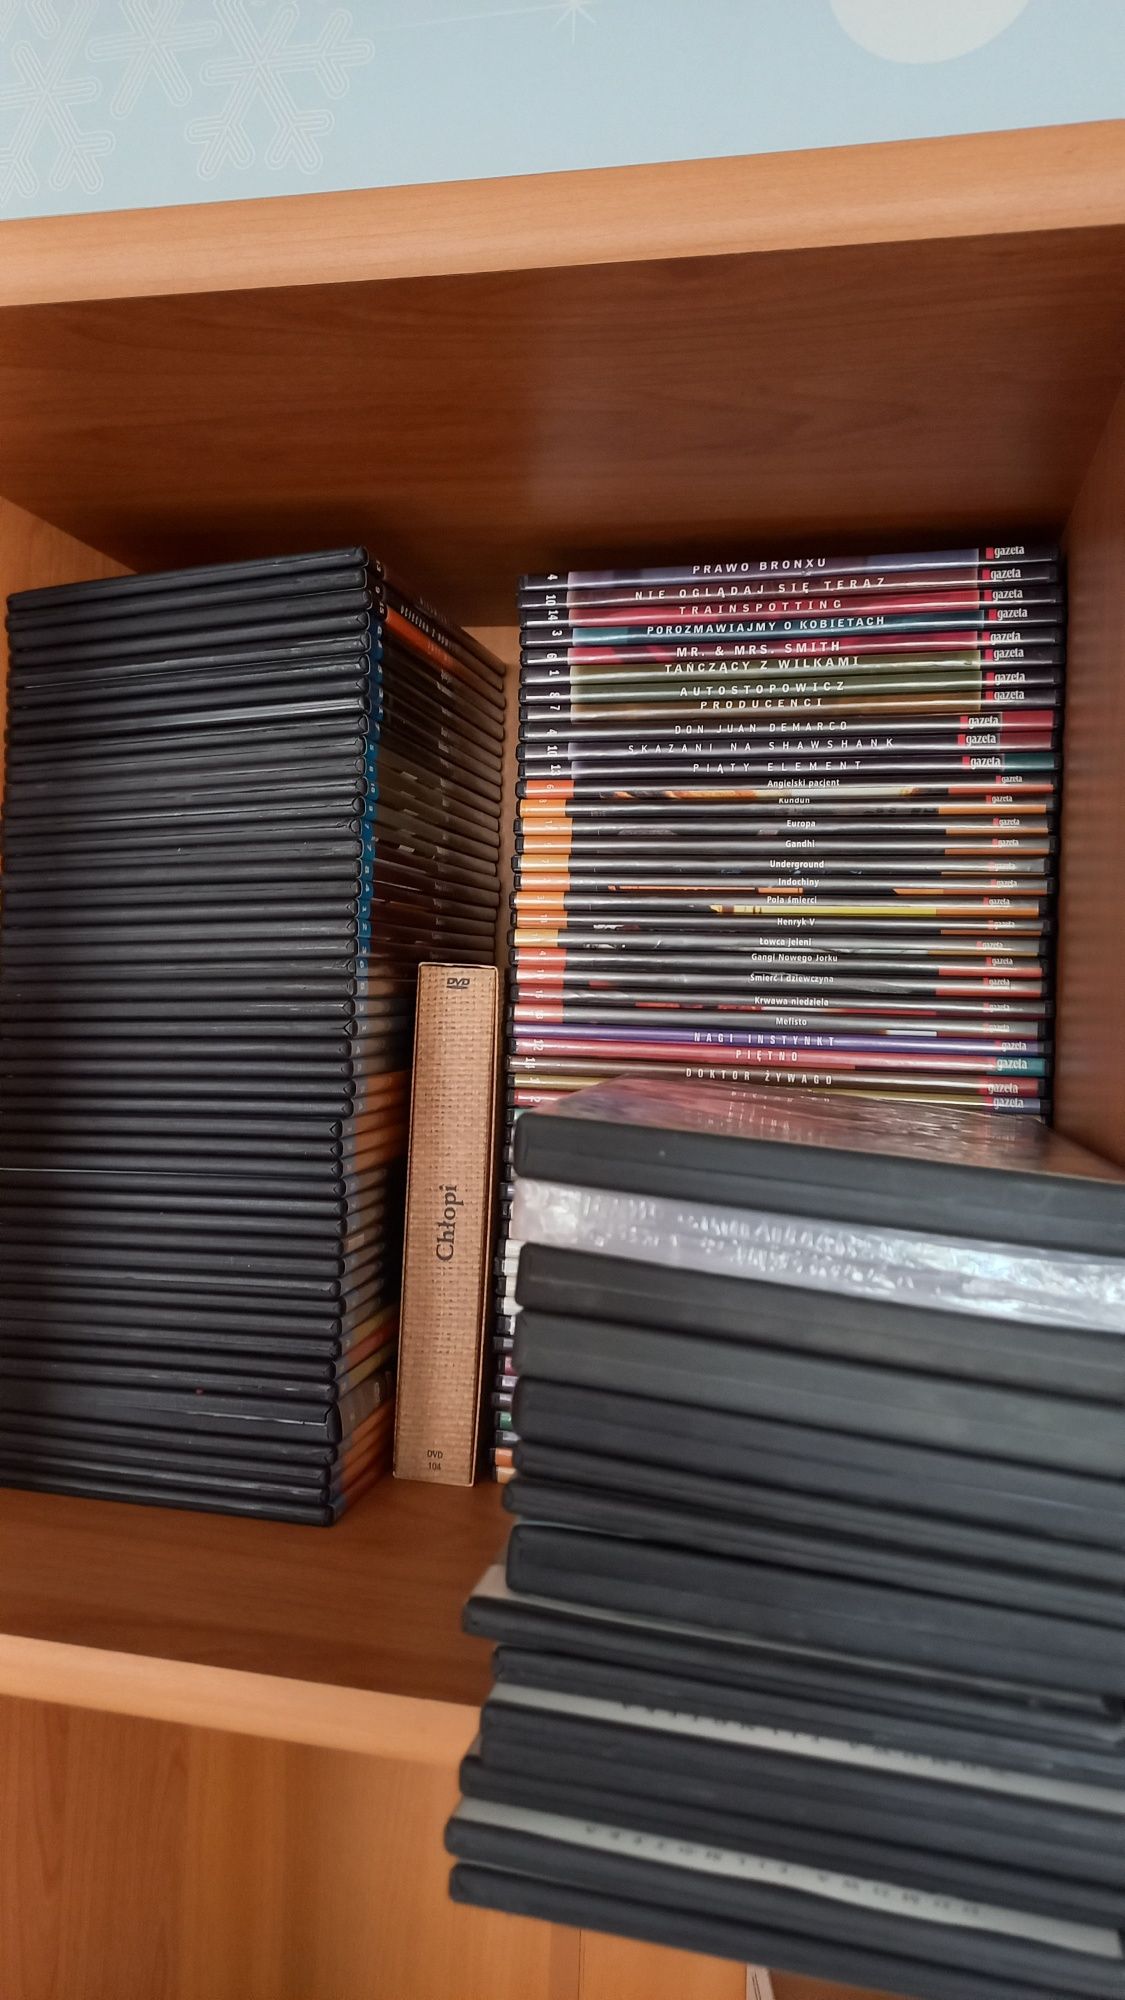 Kolekcja płyt DVD CD Filmy po polsku